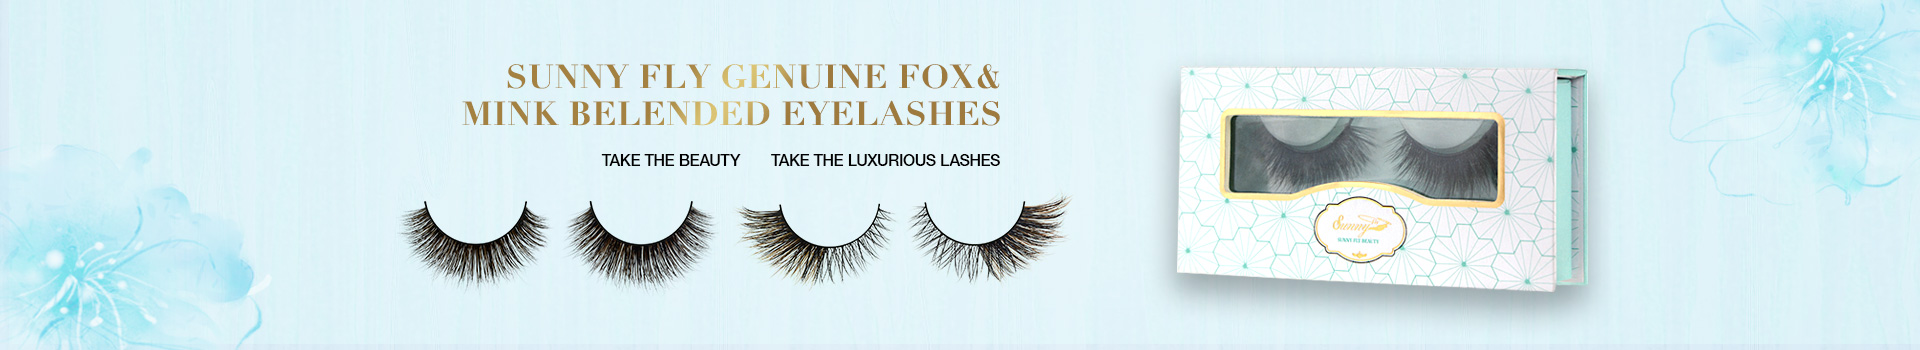 Fox & Mink Fur Blended Eyelashes FMB12